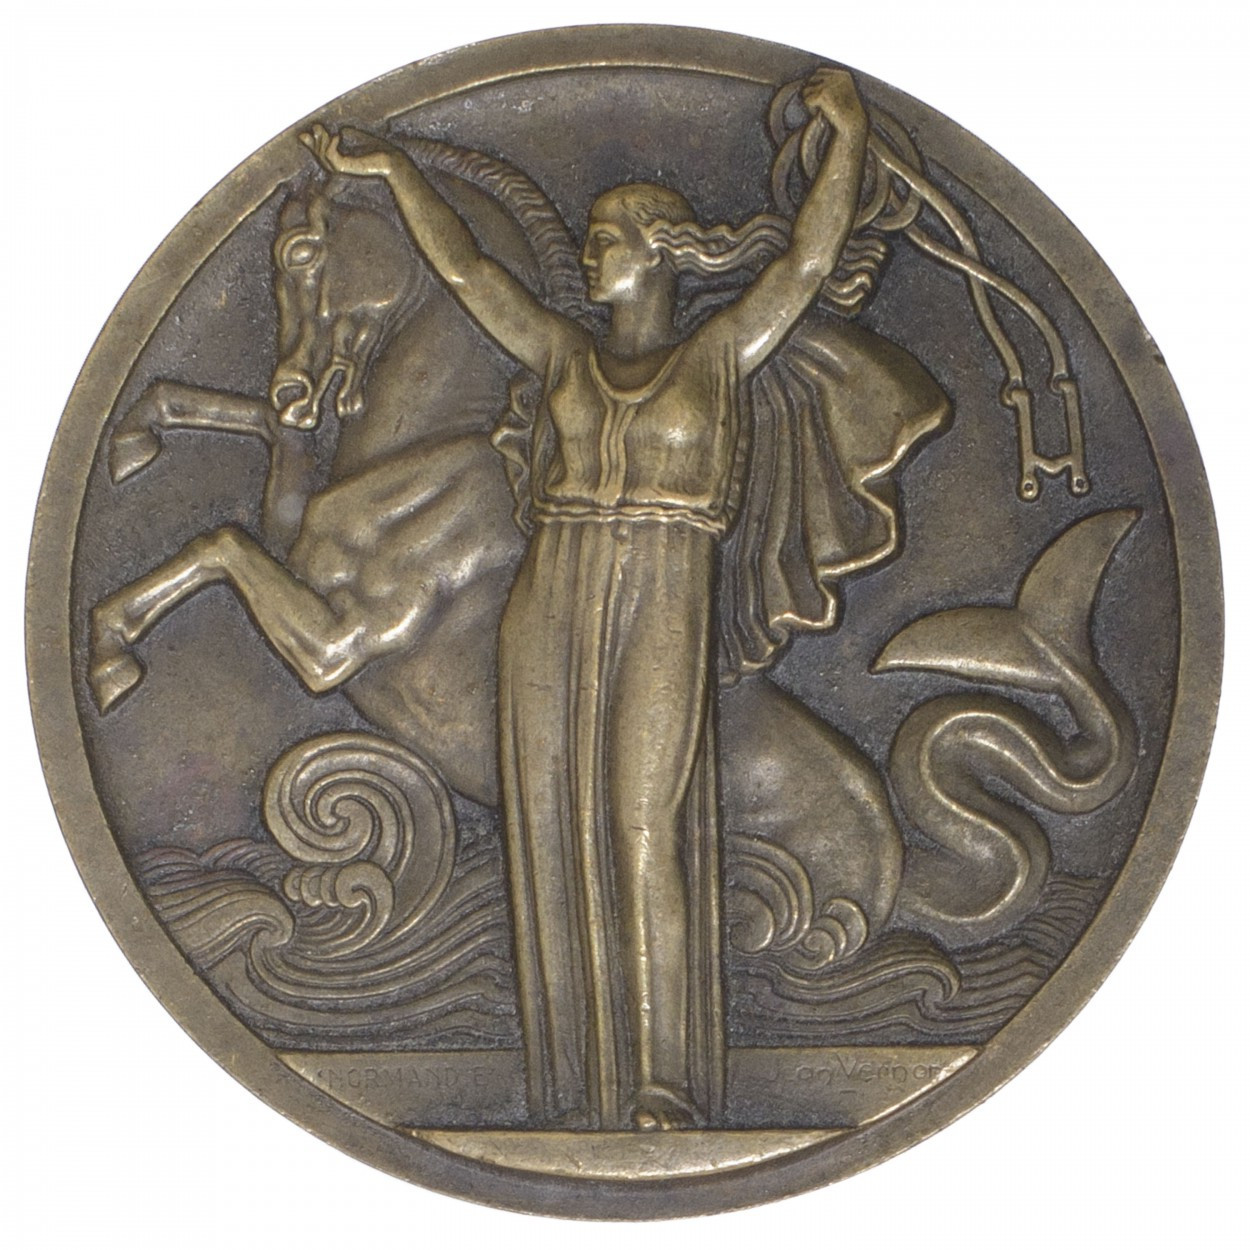 Le Normandie - Médaille en bronze - 1935 avers